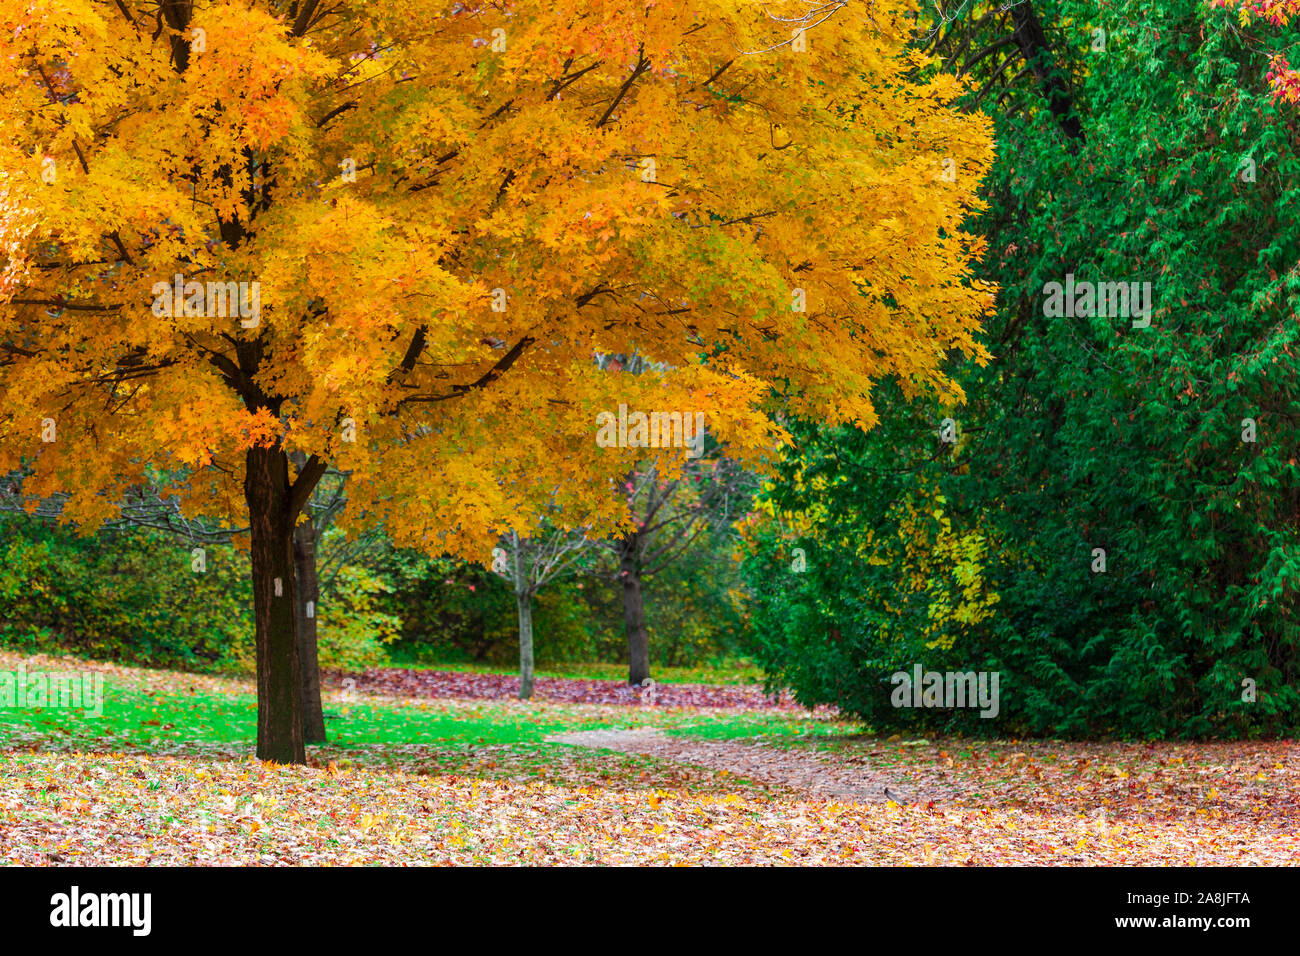 La Madre Naturaleza en pantalla completa como árboles en el sudoeste de Ontario, Canadá la señal del cambio de estaciones de verano a otoño. Foto de stock